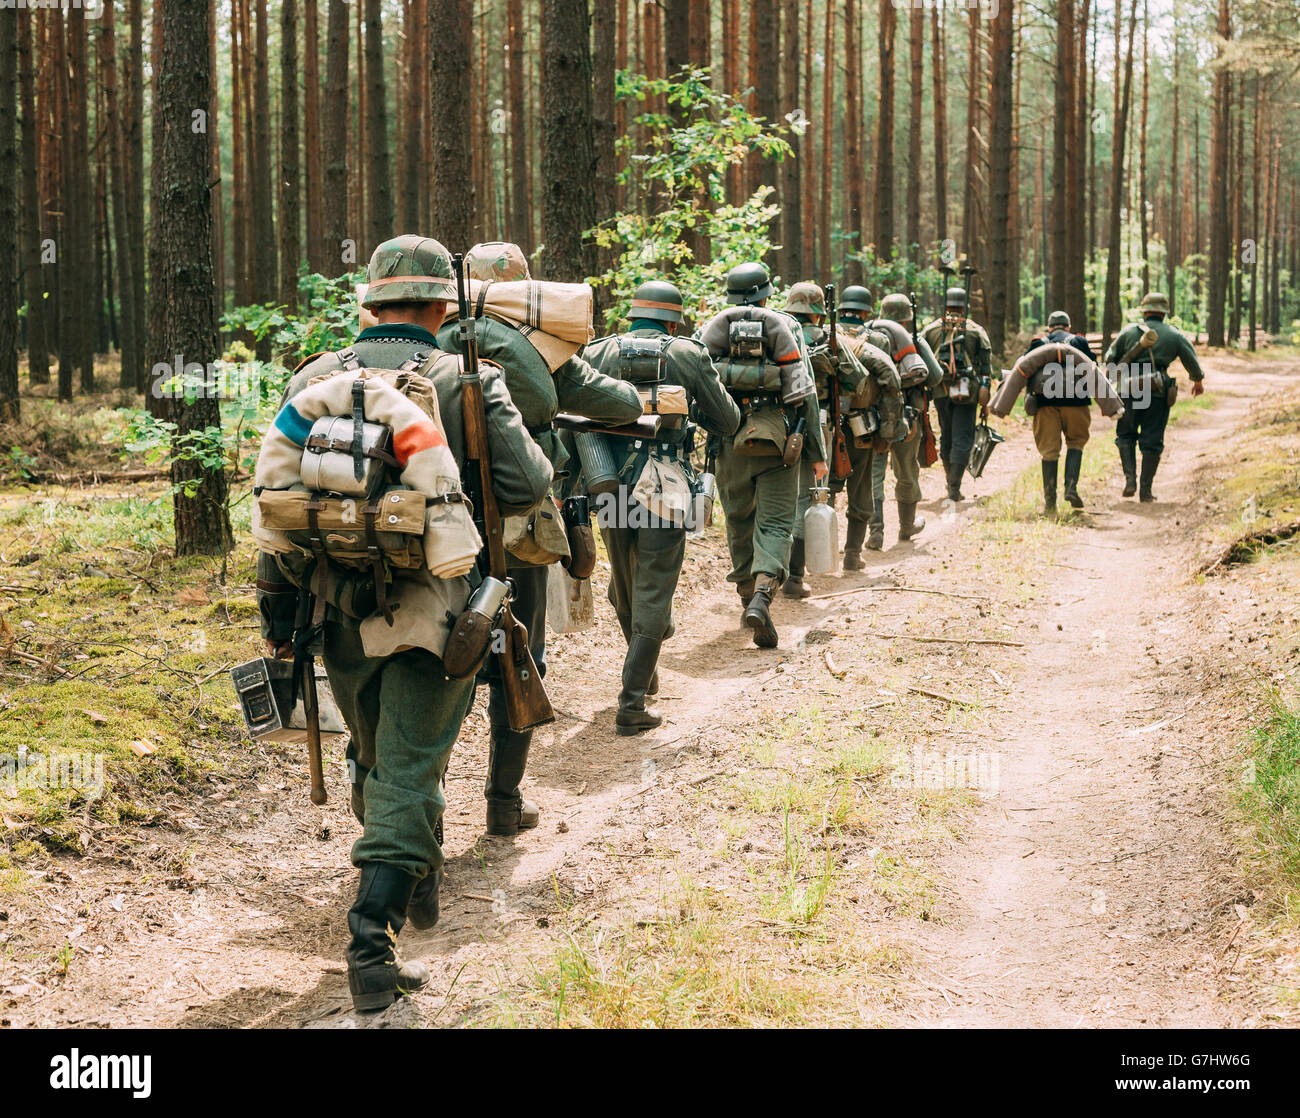 De reconstitution historique non identifié, habillé en soldat de la Wehrmacht allemande à pied dans la forêt d'été Banque D'Images